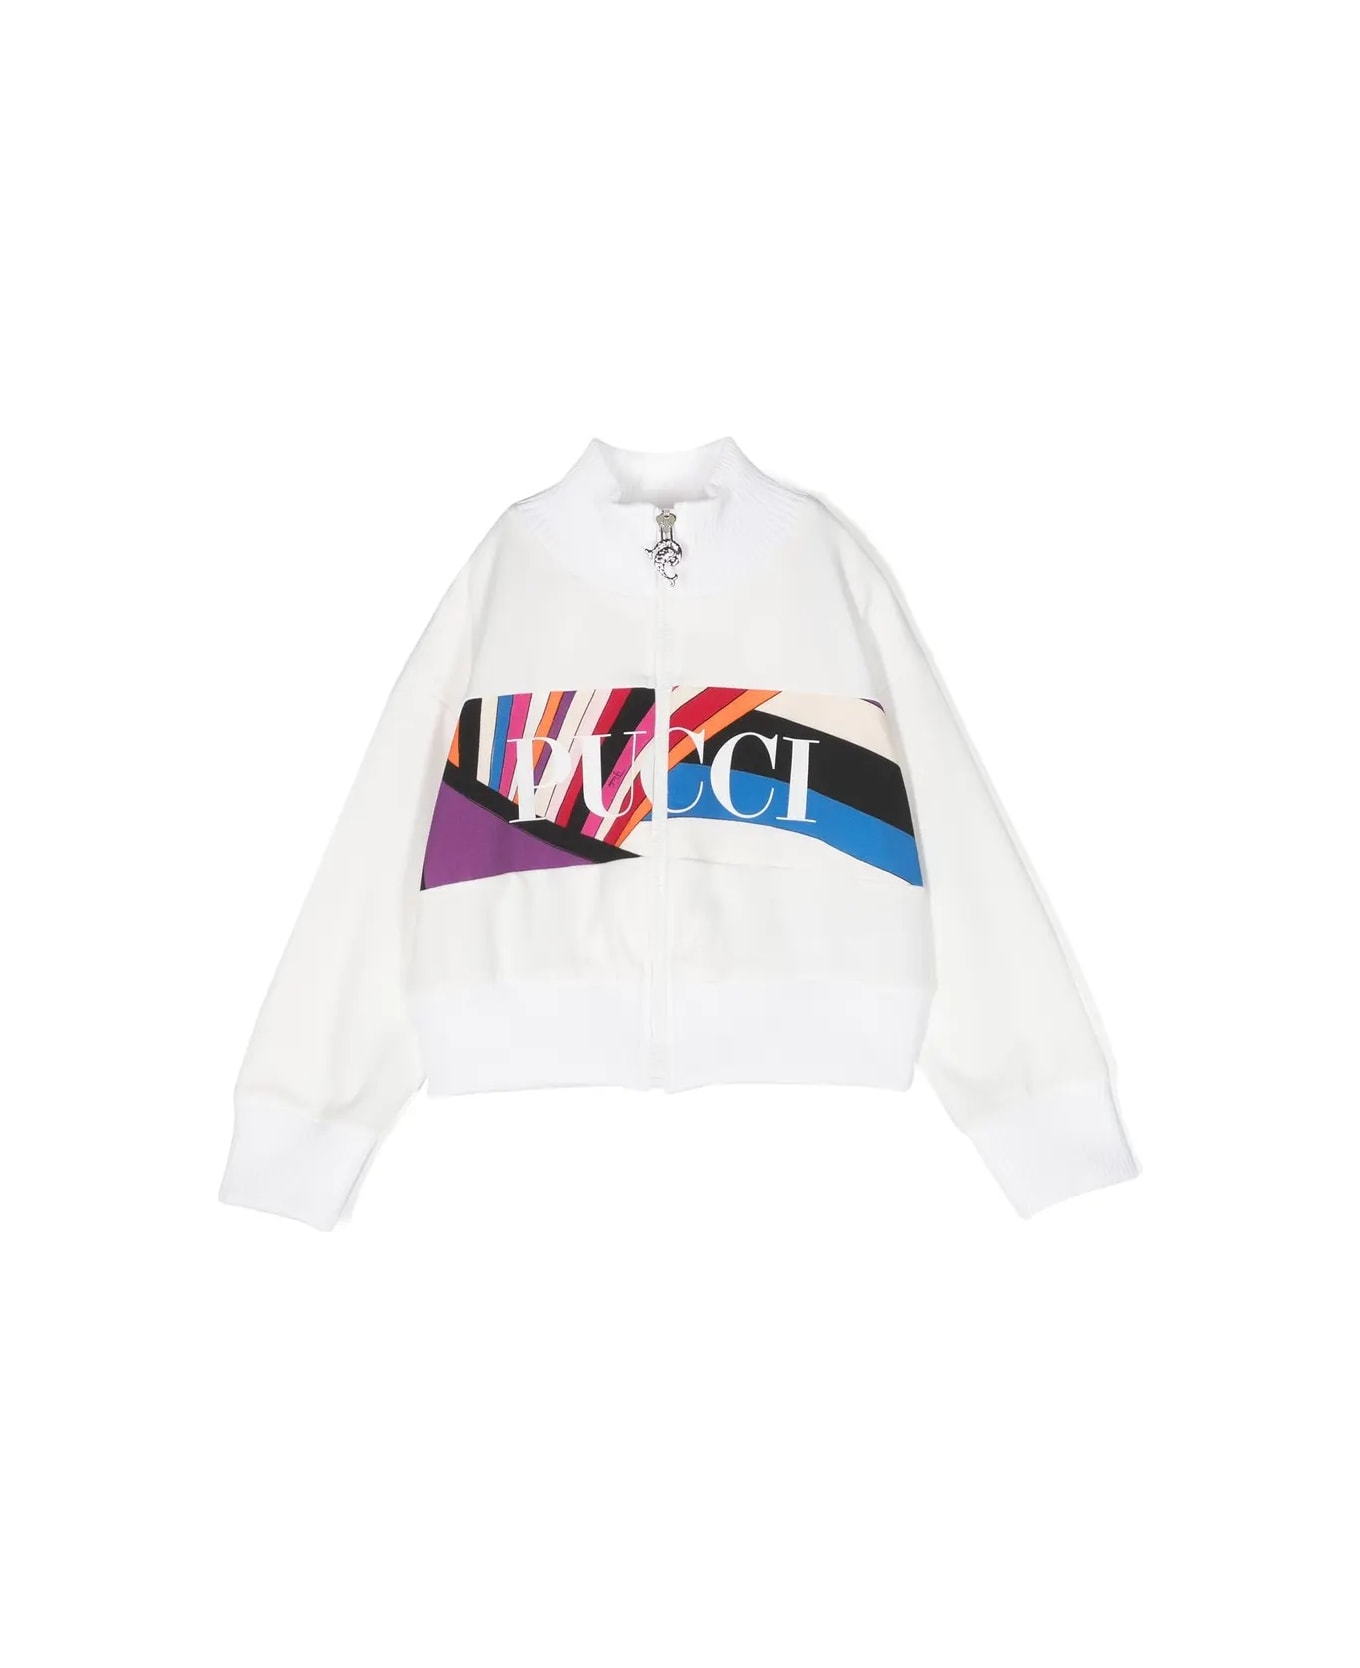 Pucci White Zip-up Sweatshirt With Iride Print Logo Band - White ニットウェア＆スウェットシャツ